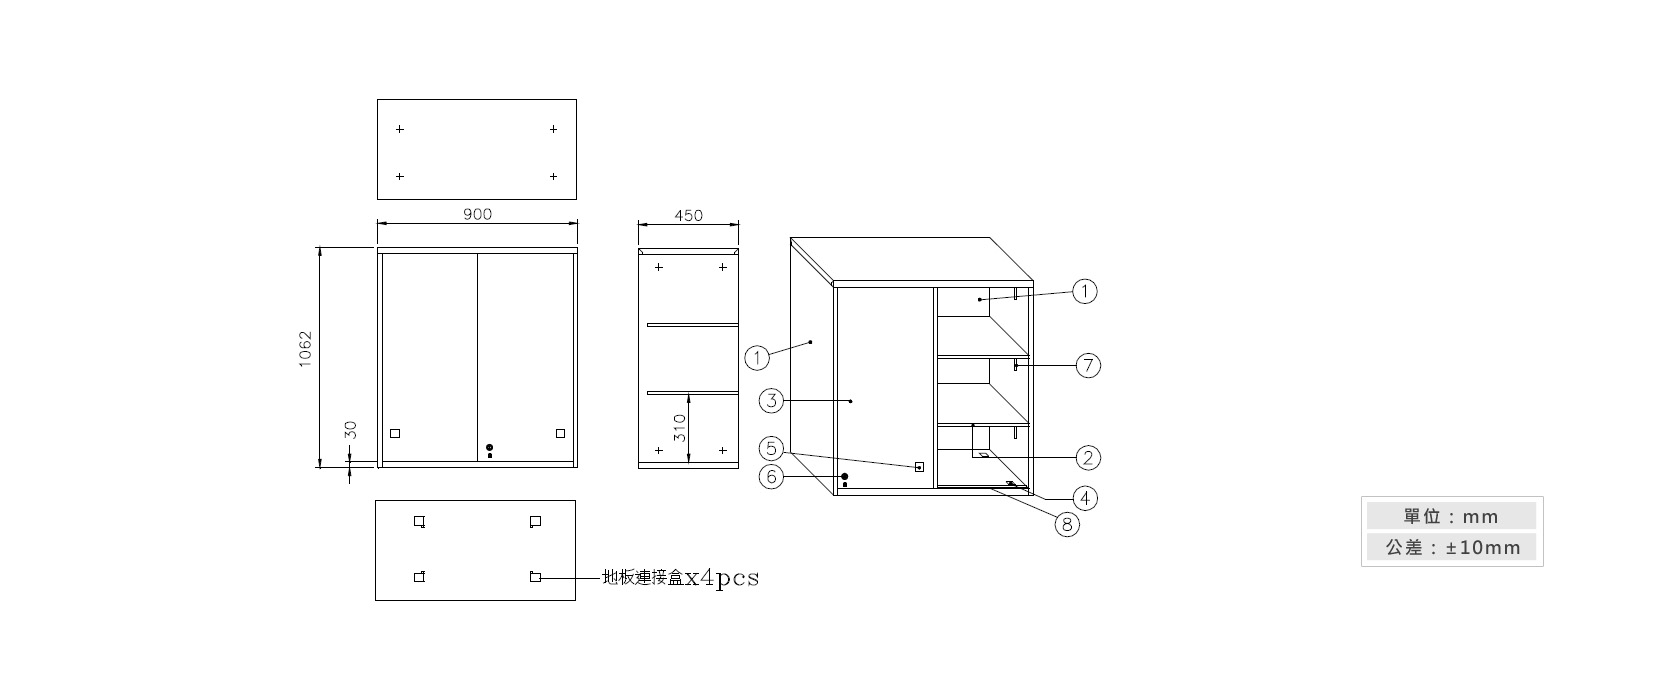 3-15 鐵拉門上置式鋼製公文櫃材質說明